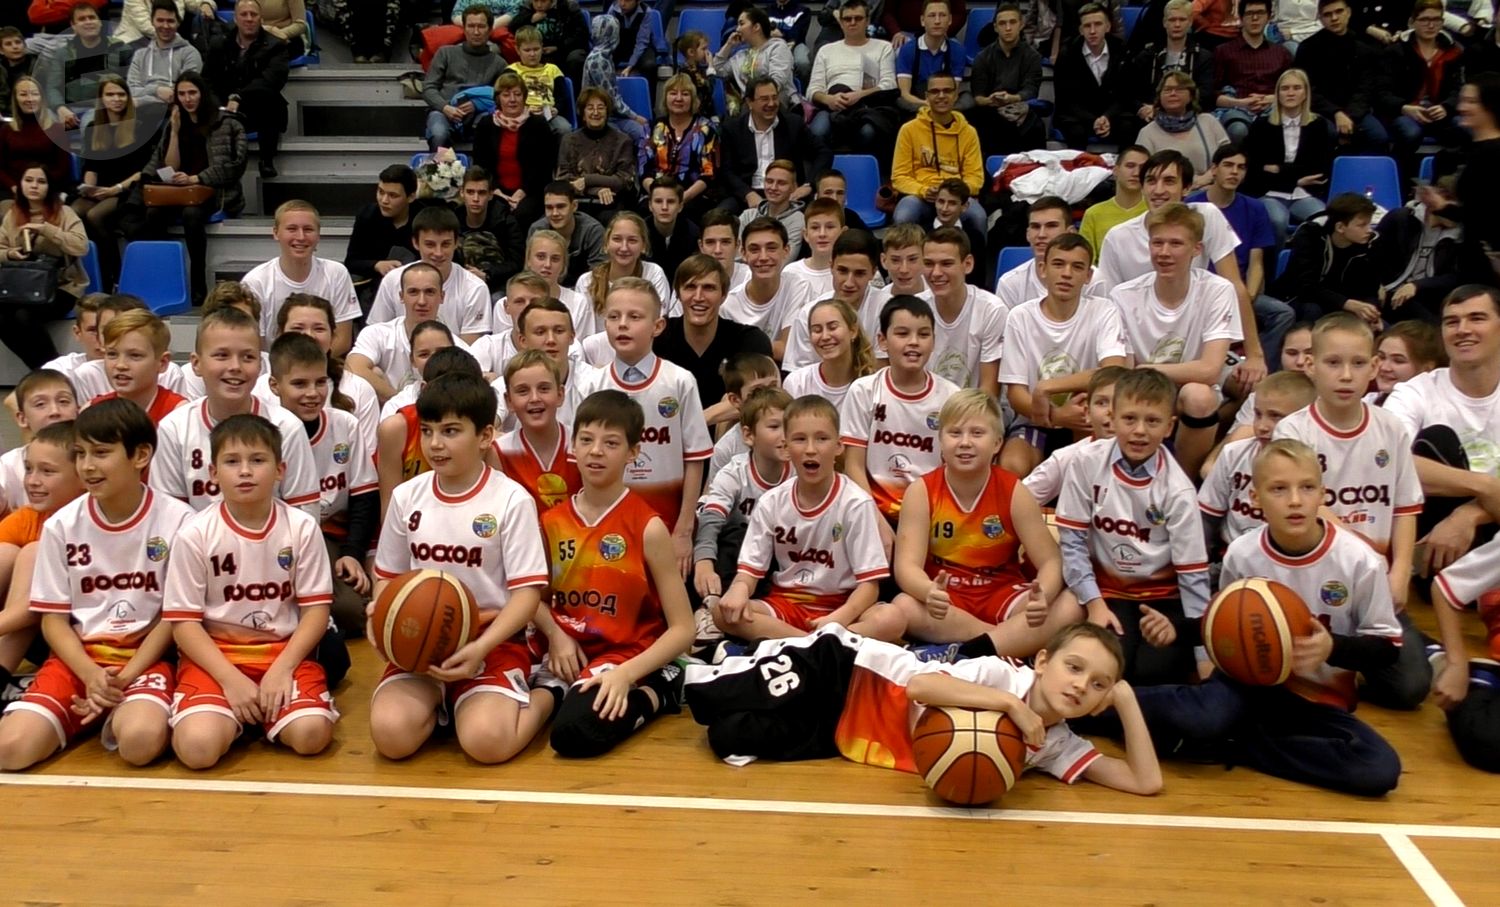 Сайт российской федерации баскетбола